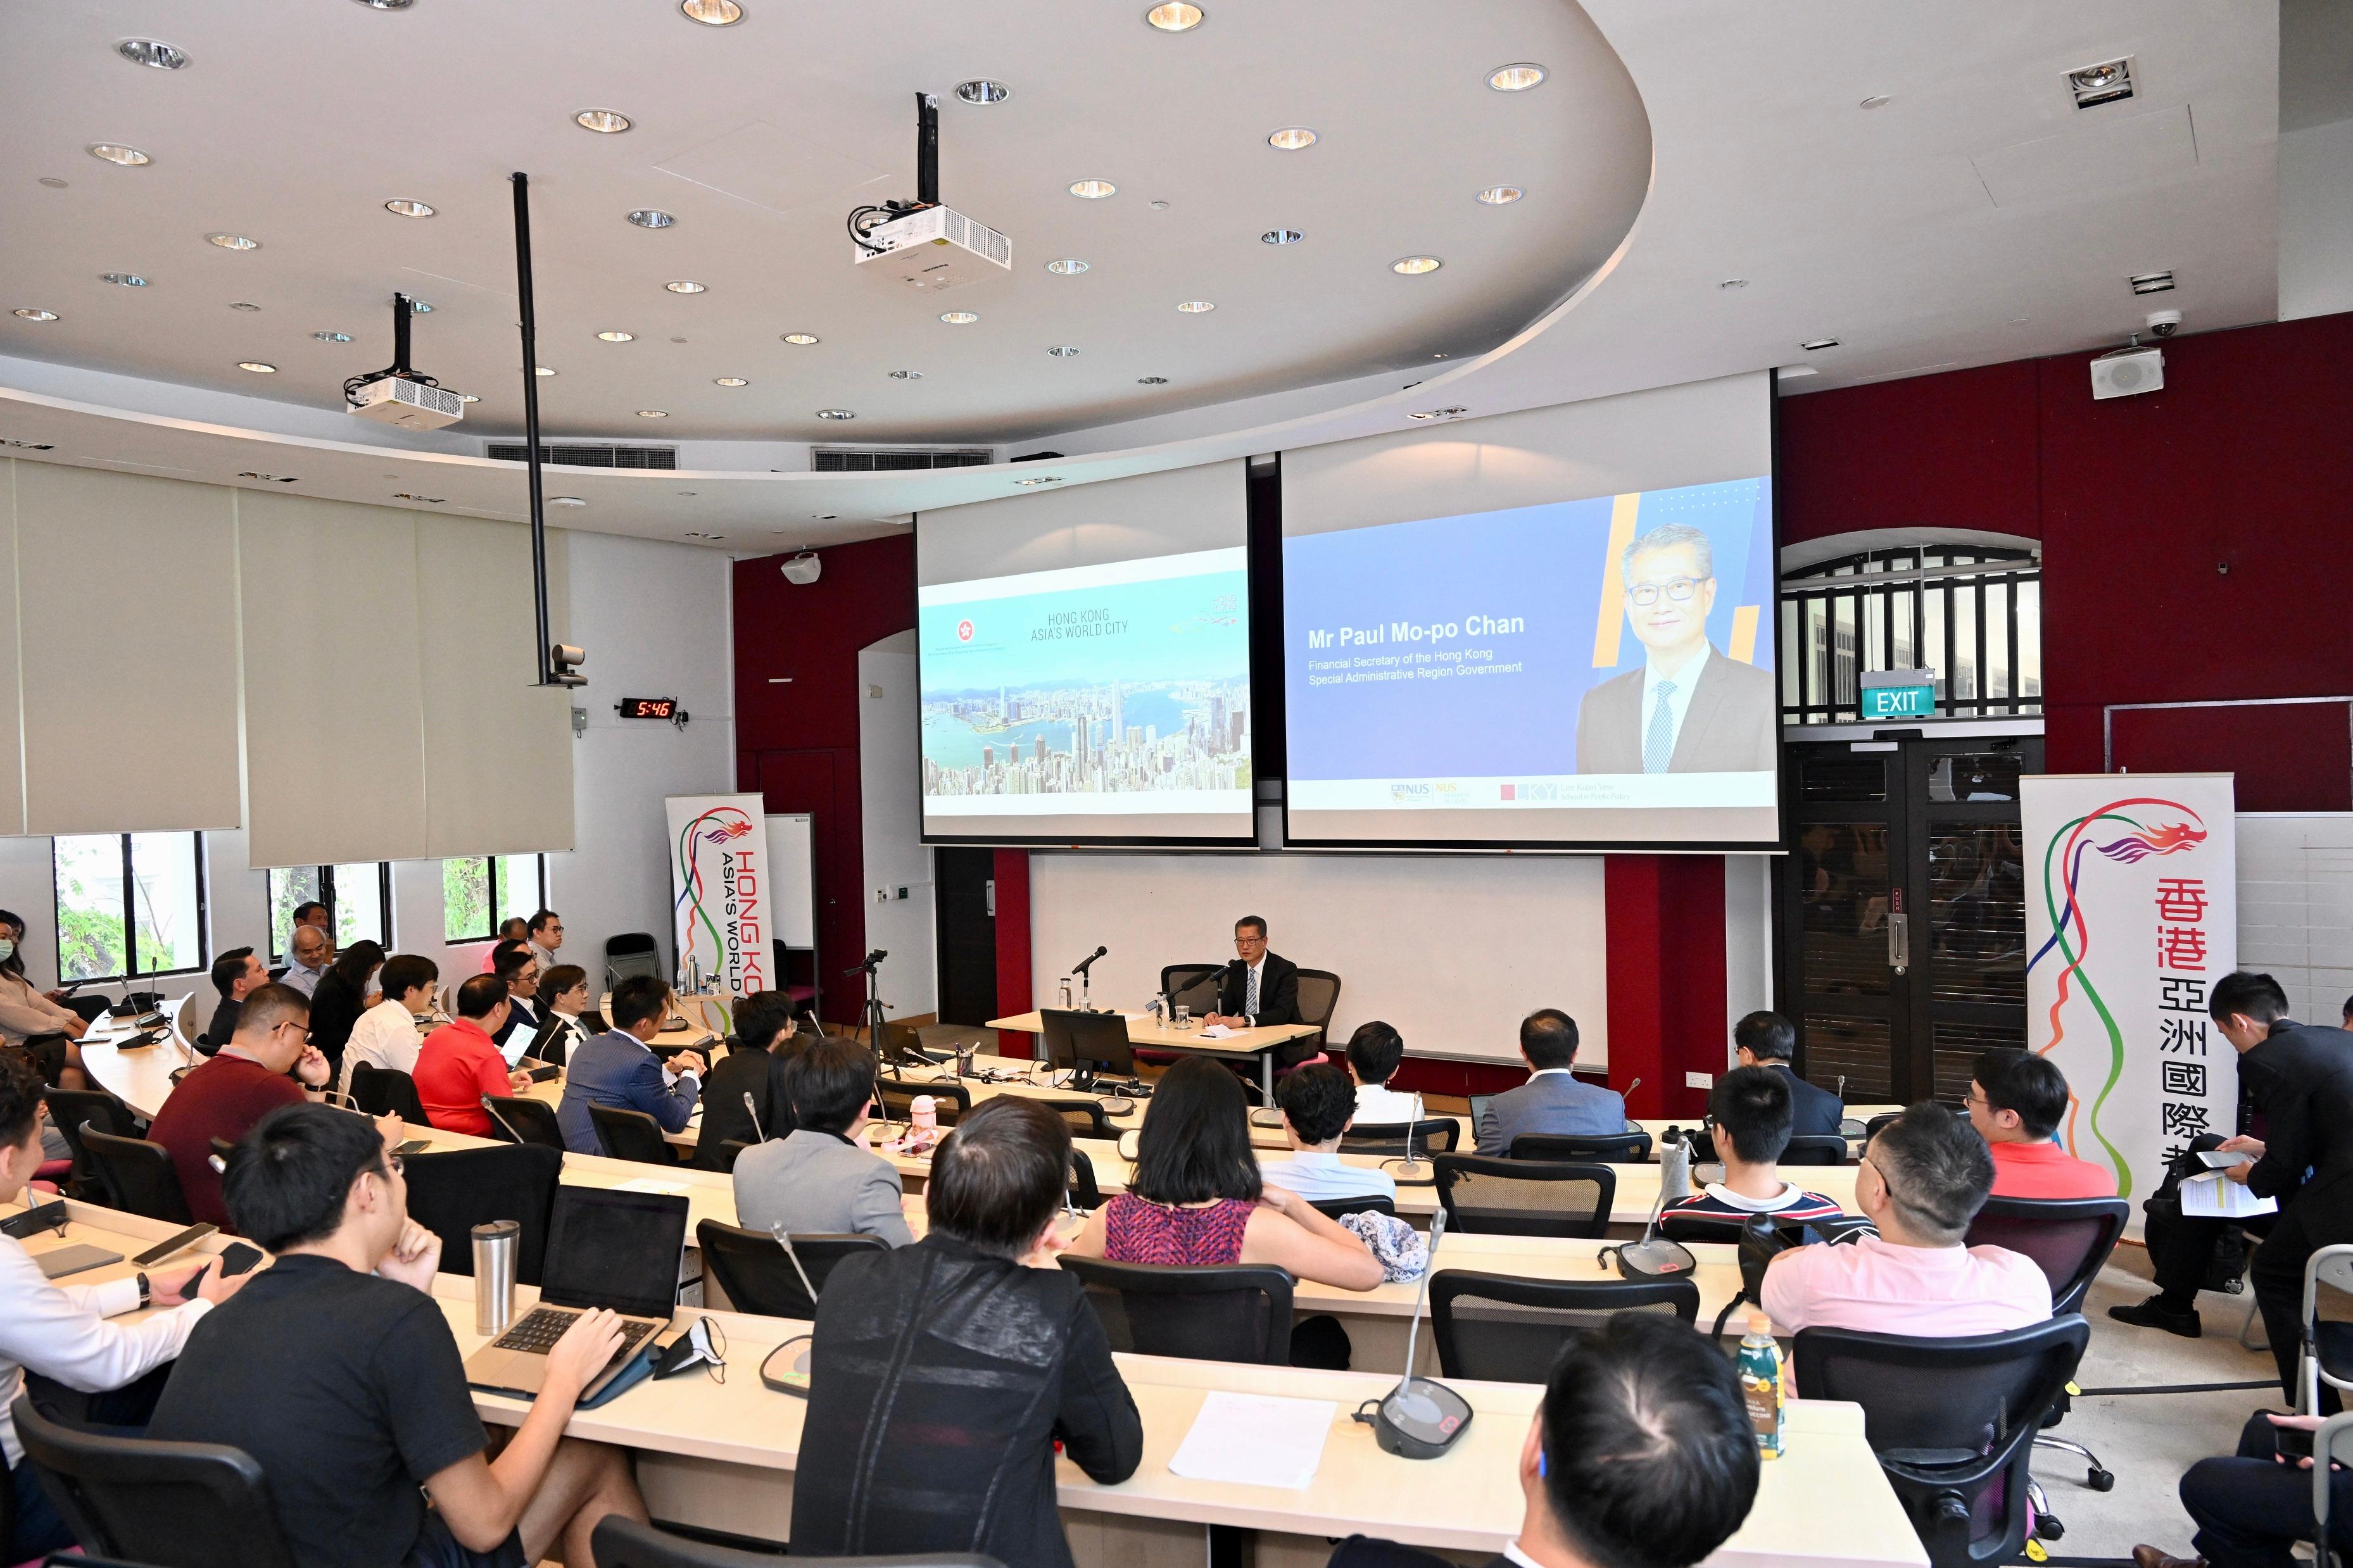 財政司司長陳茂波三月二十九日展開新加坡訪問行程。圖示陳茂波在新加坡國立大學出席座談會並致辭。